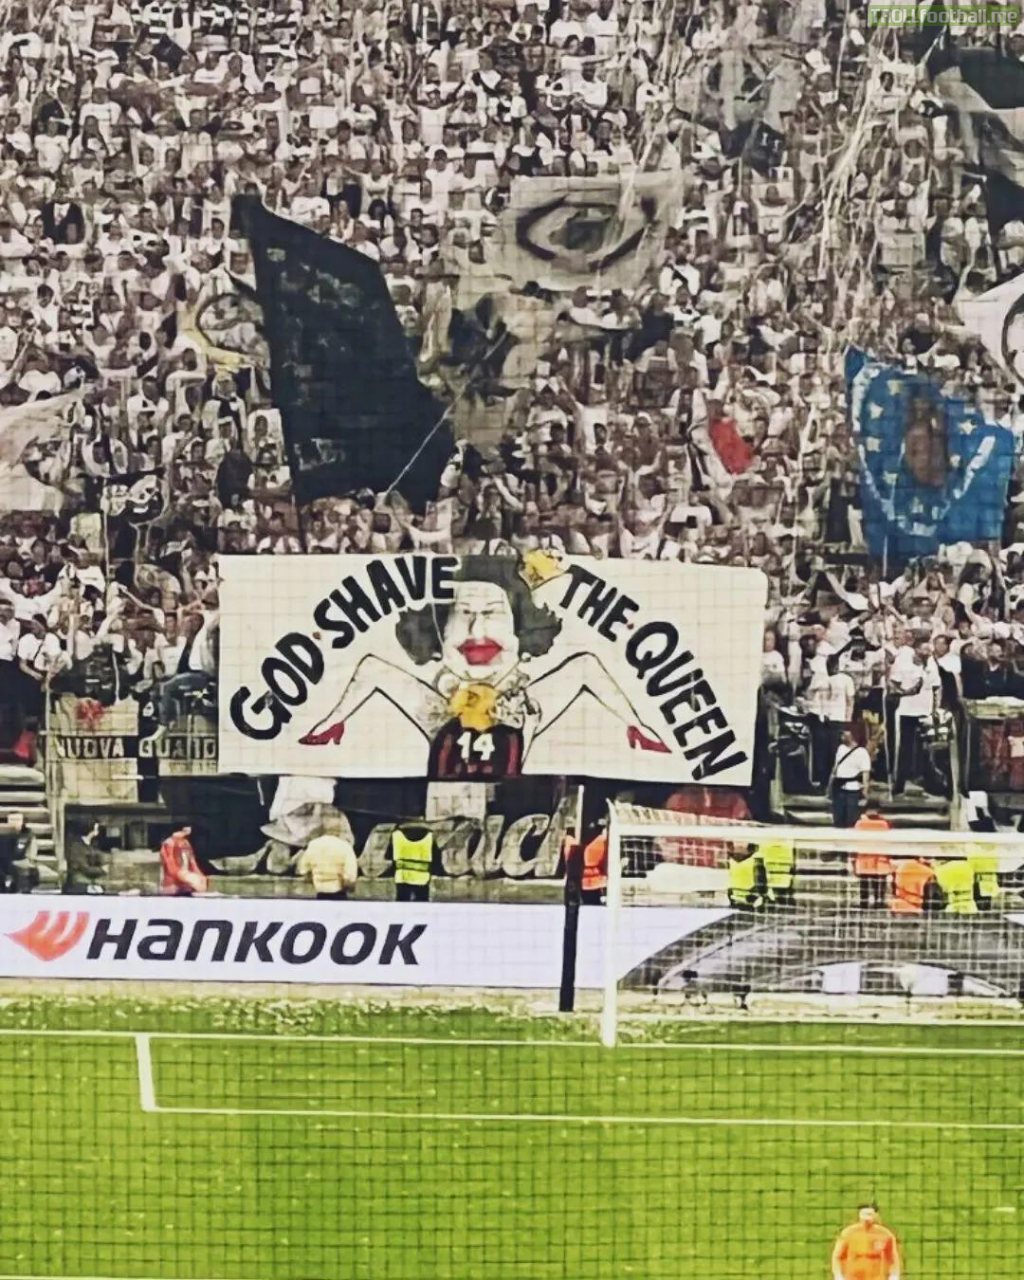 Frankfurt fans "God Shave the Queen" banner